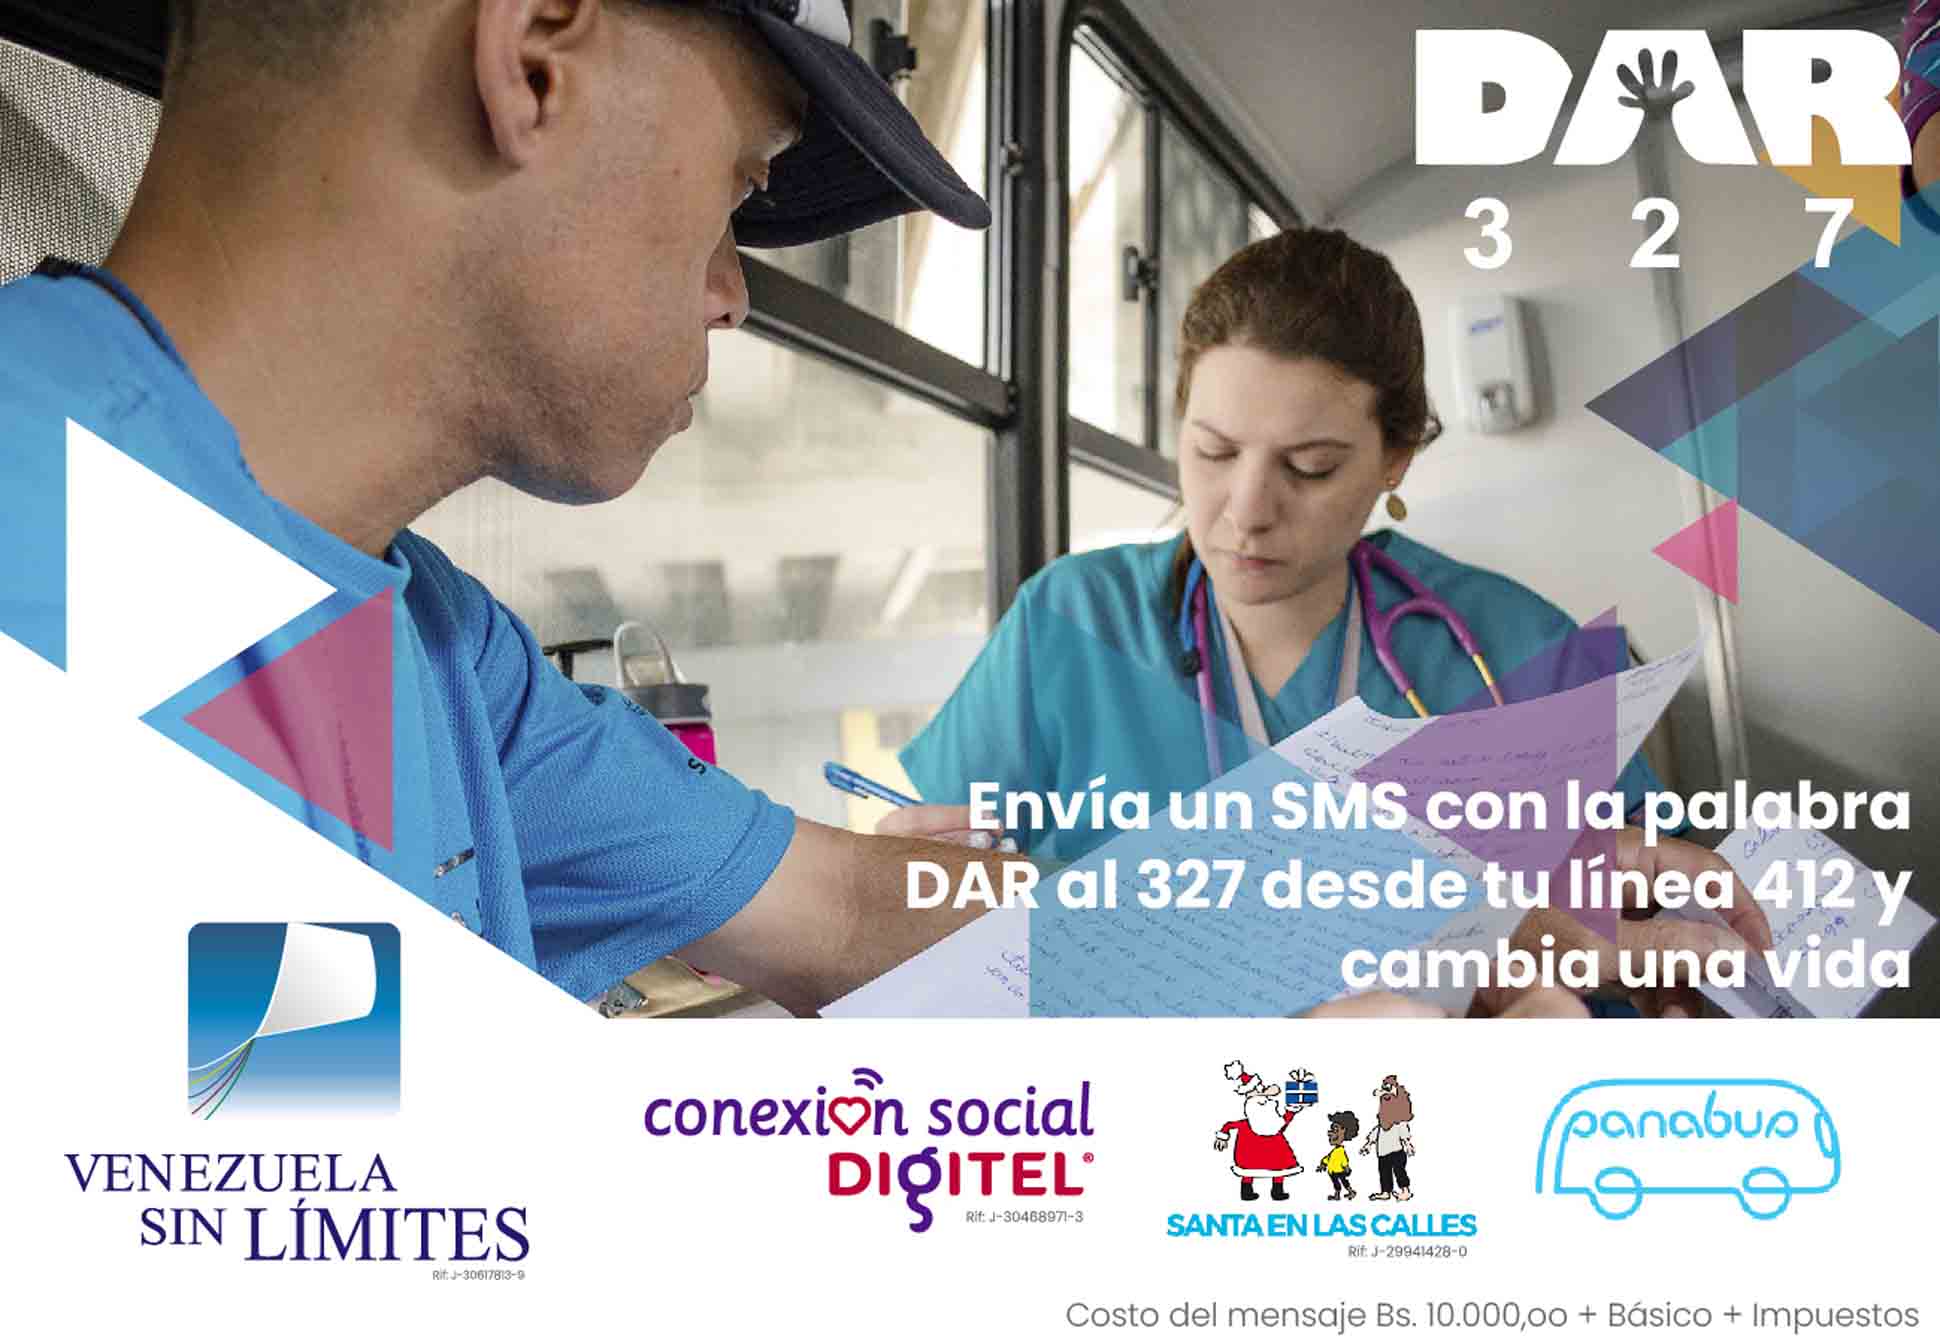  Conexión Social Digitel apoya la campaña DAR a beneficio de Panabus